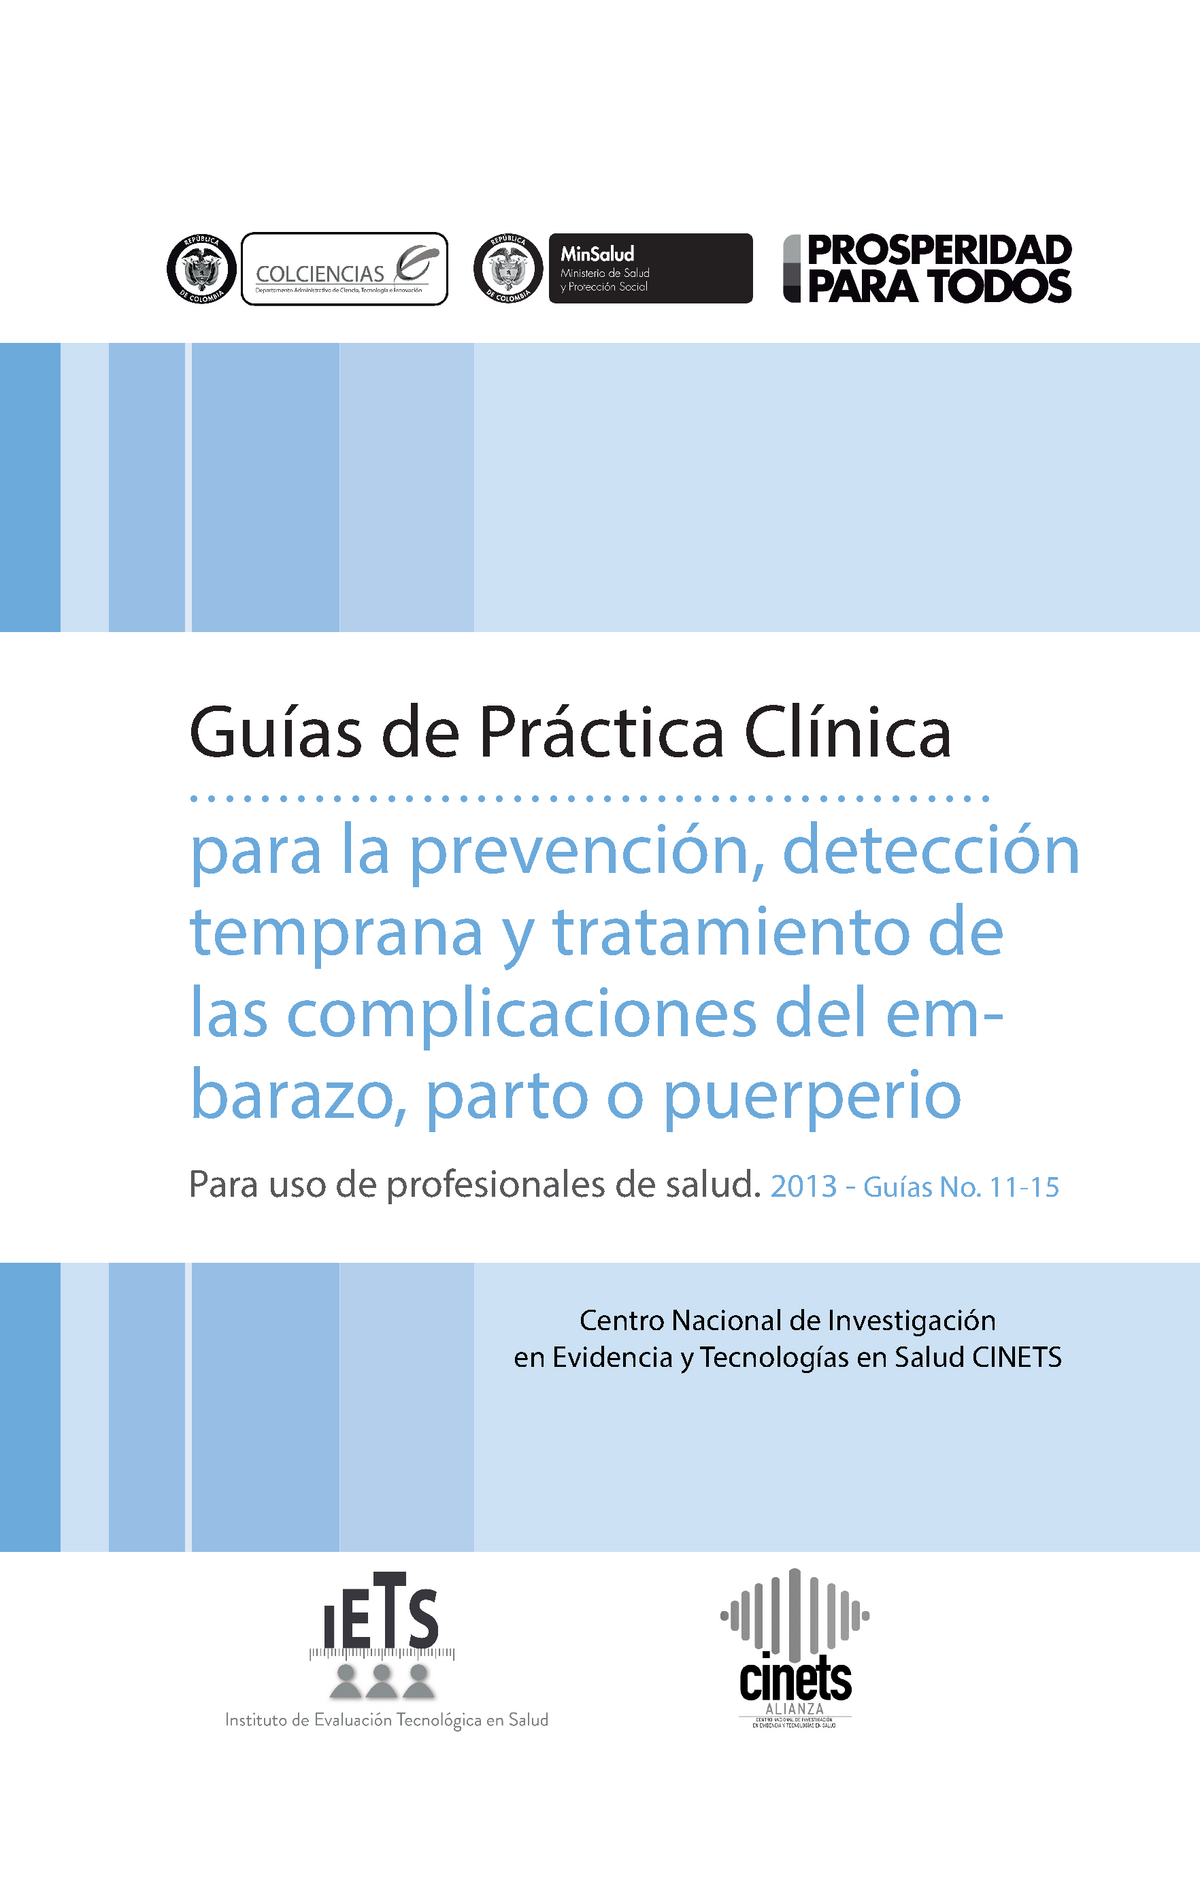 Guia De Practica Clinica Corta Del Embarazo Parto Y Puerperio Guías De Práctica Clínica 